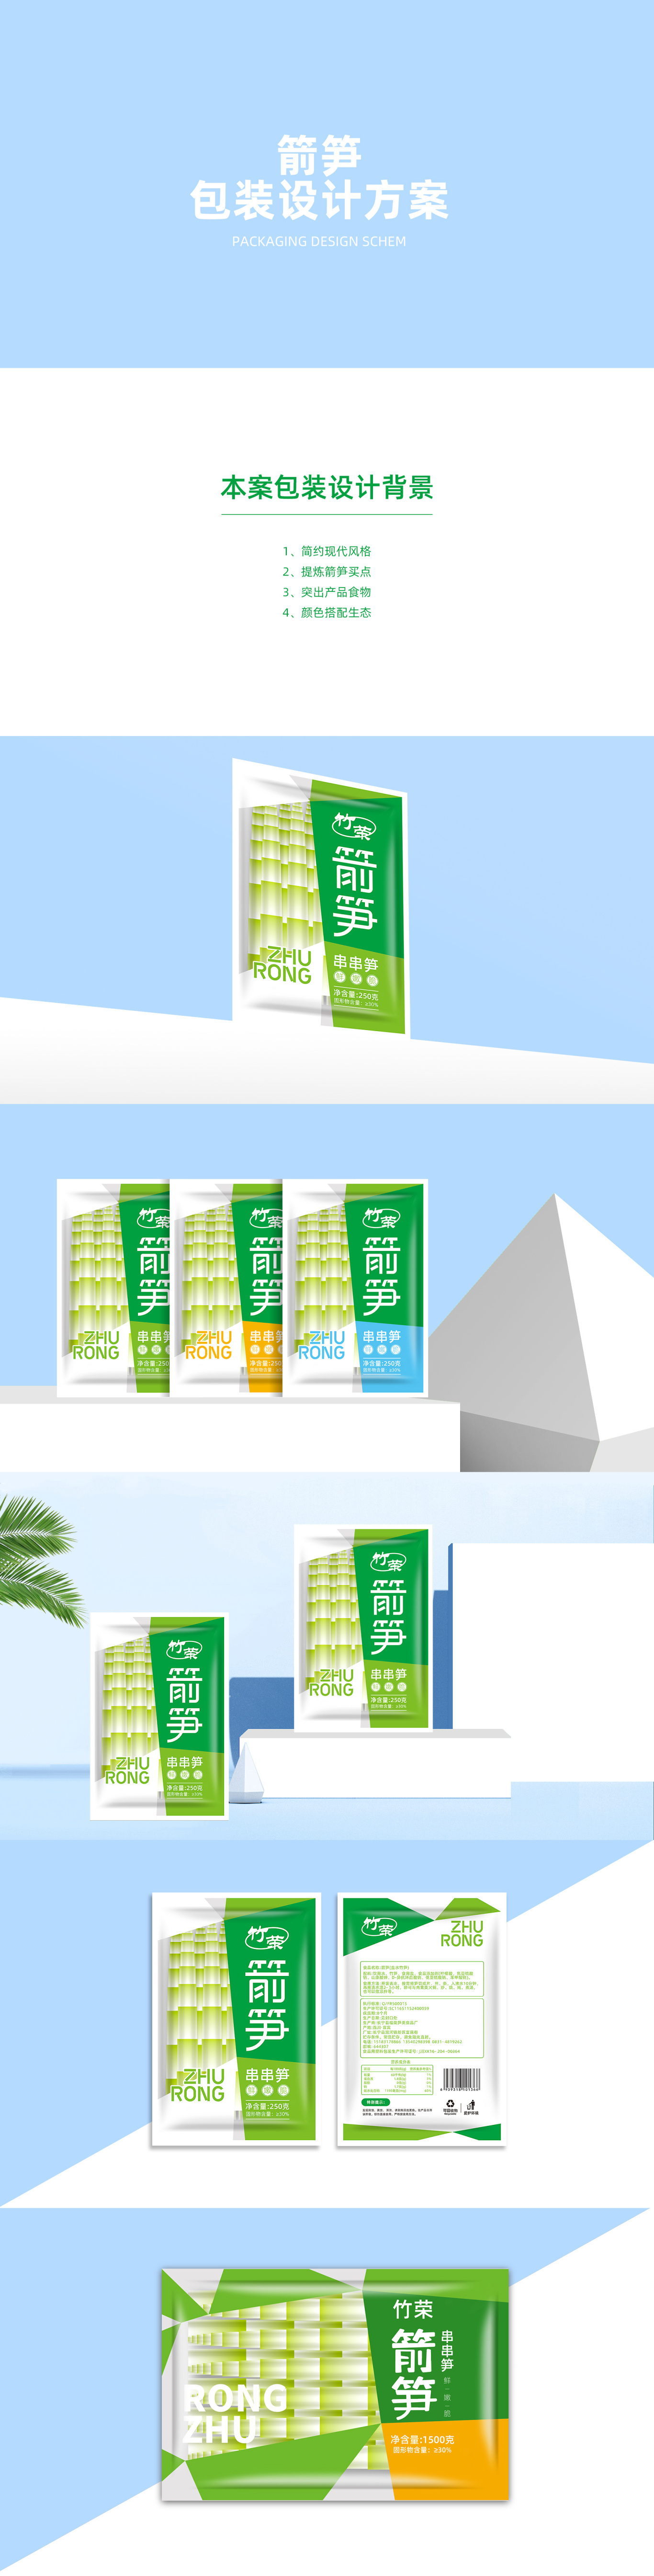 食品品牌系列包装设计竹笋包装设计图0